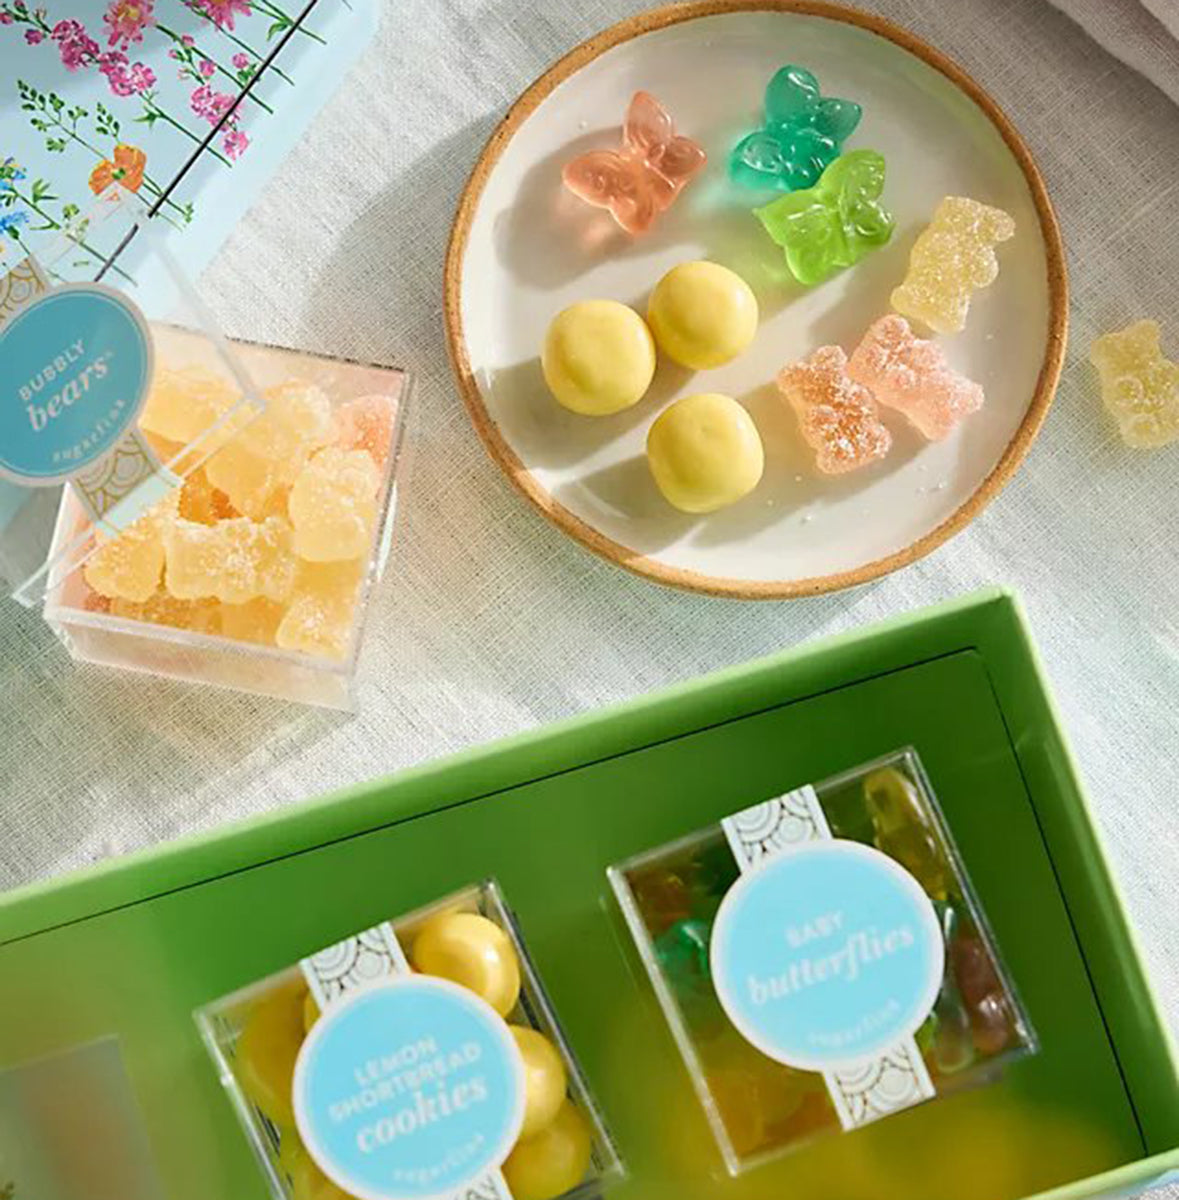 Sugarfina Garden Party 3-Piece Candy Bento Box